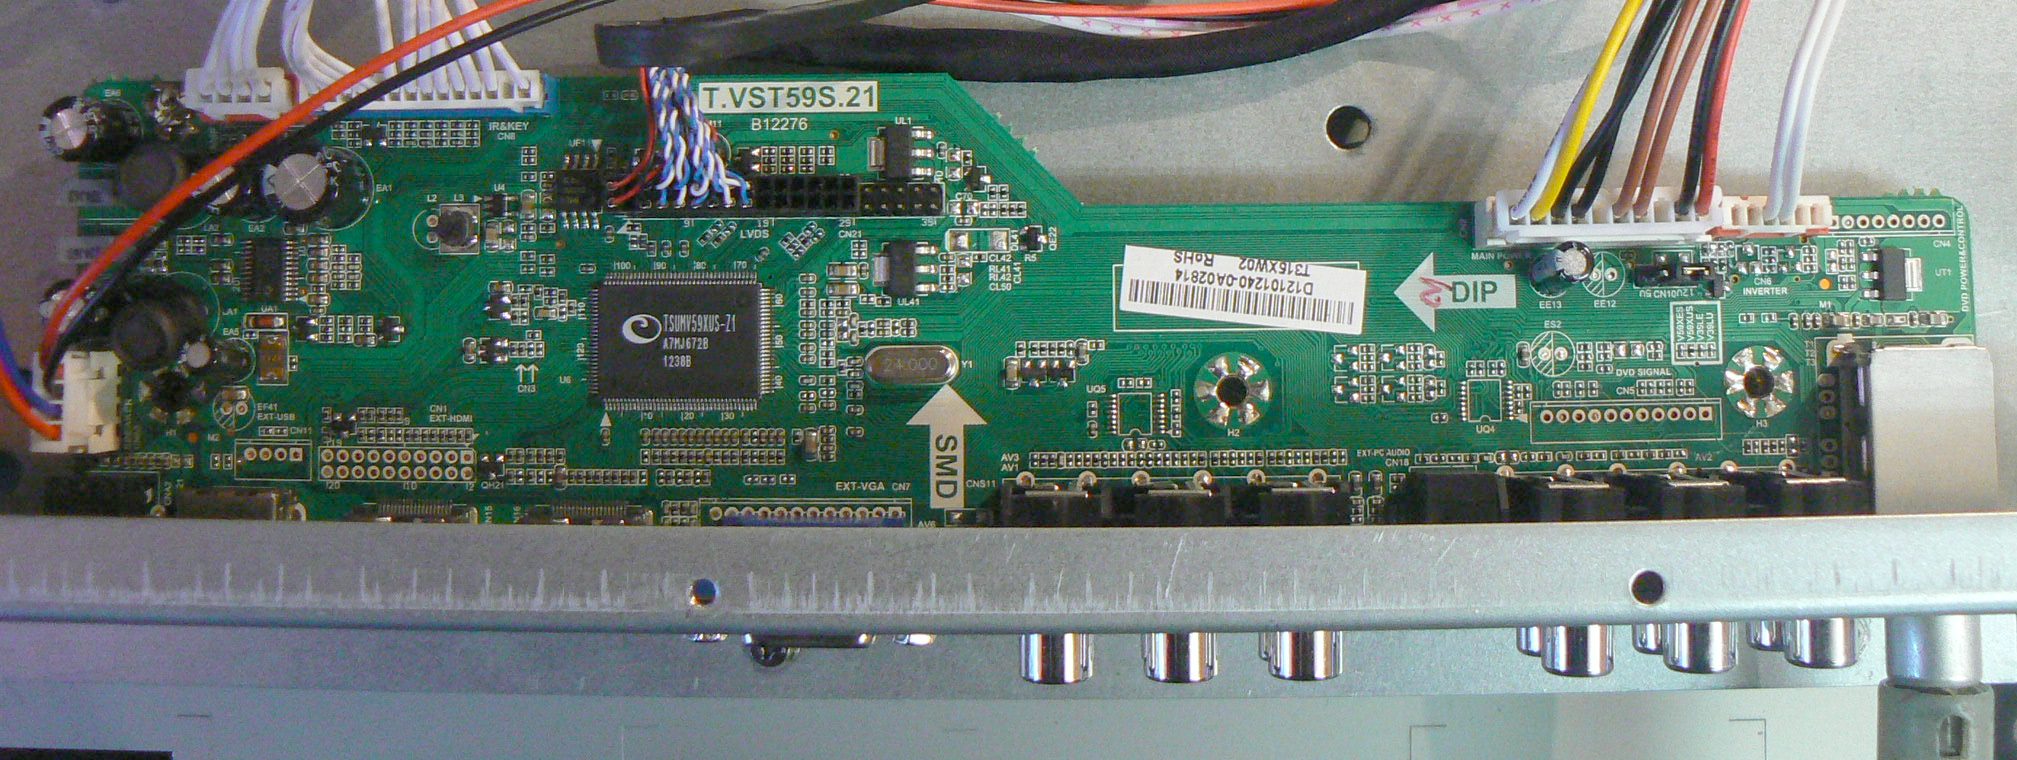  SATURN LCD32T Main Board-T.VST59S.21